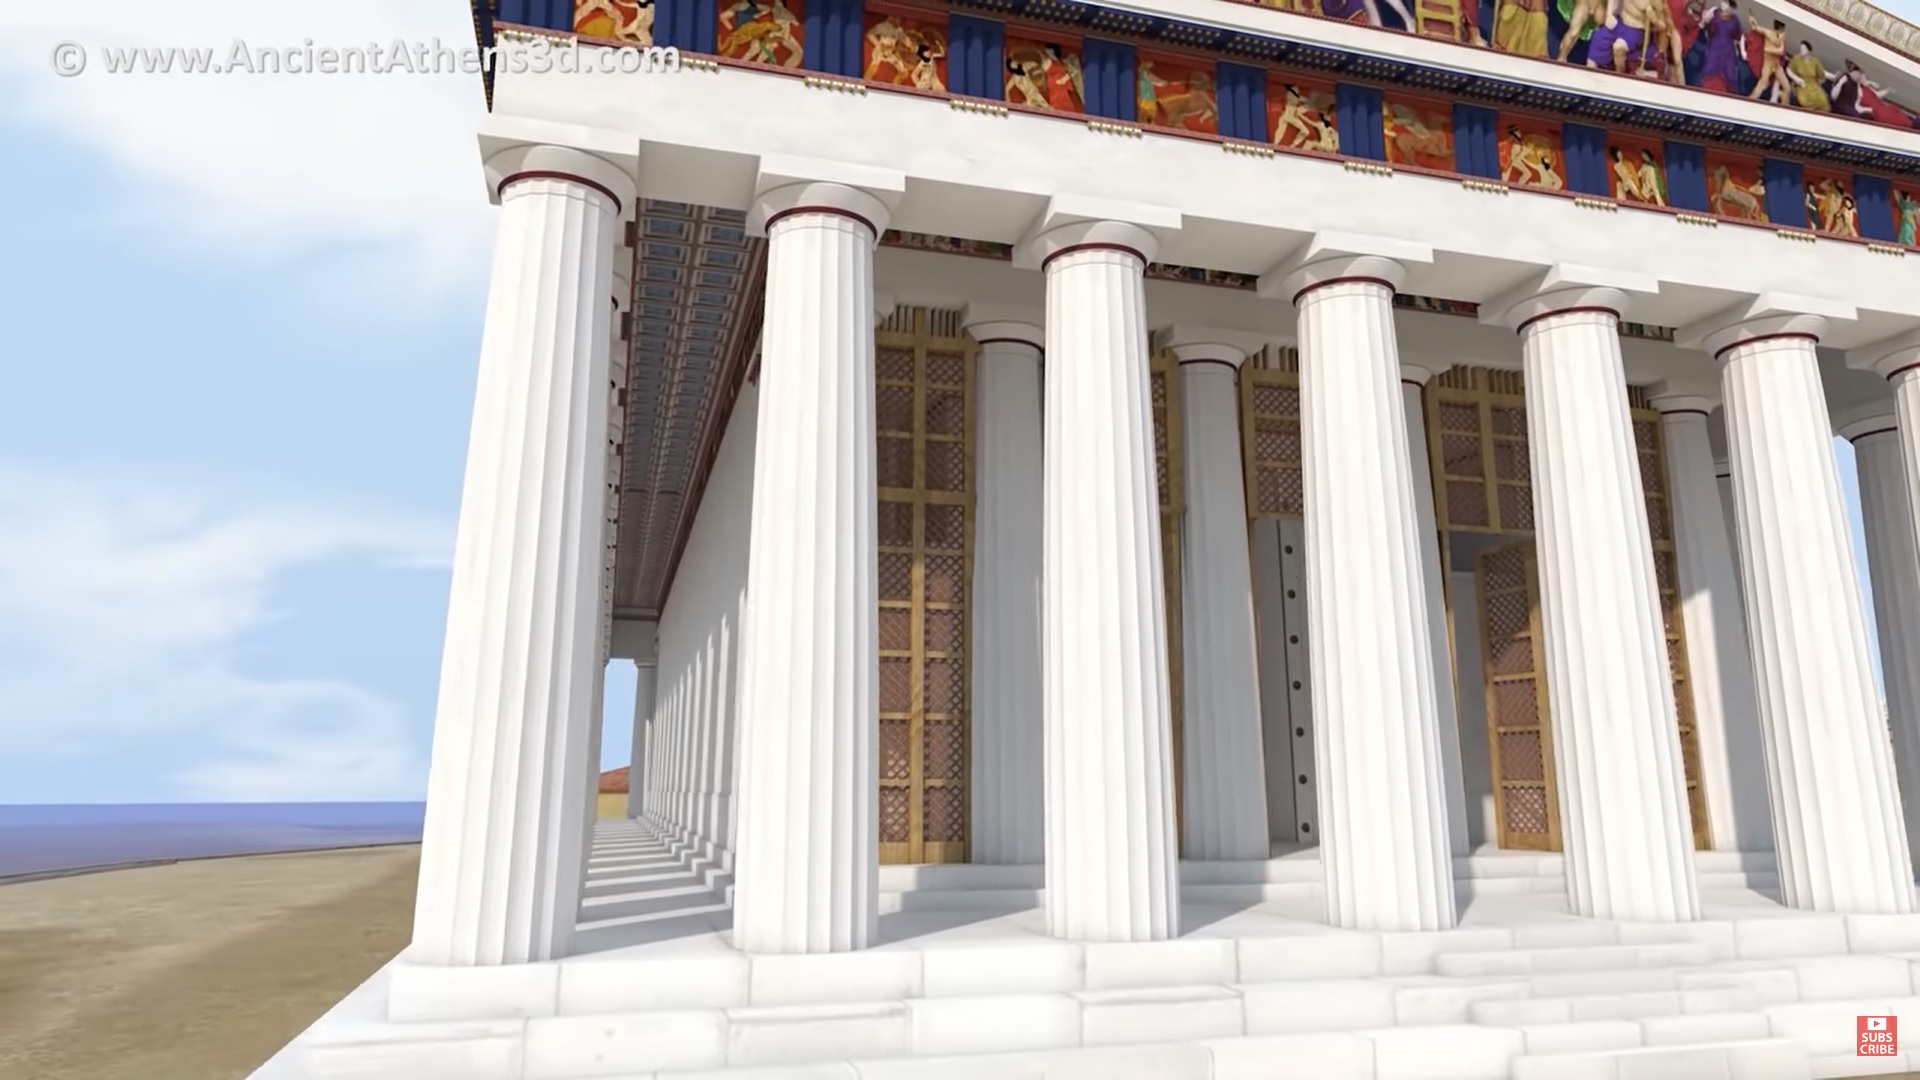 Η Κλασική Αθήνα του «Χρυσού Αιώνα» ξαναζωντανεύει μπροστά στα μάτια σου με 3D αναπαράσταση